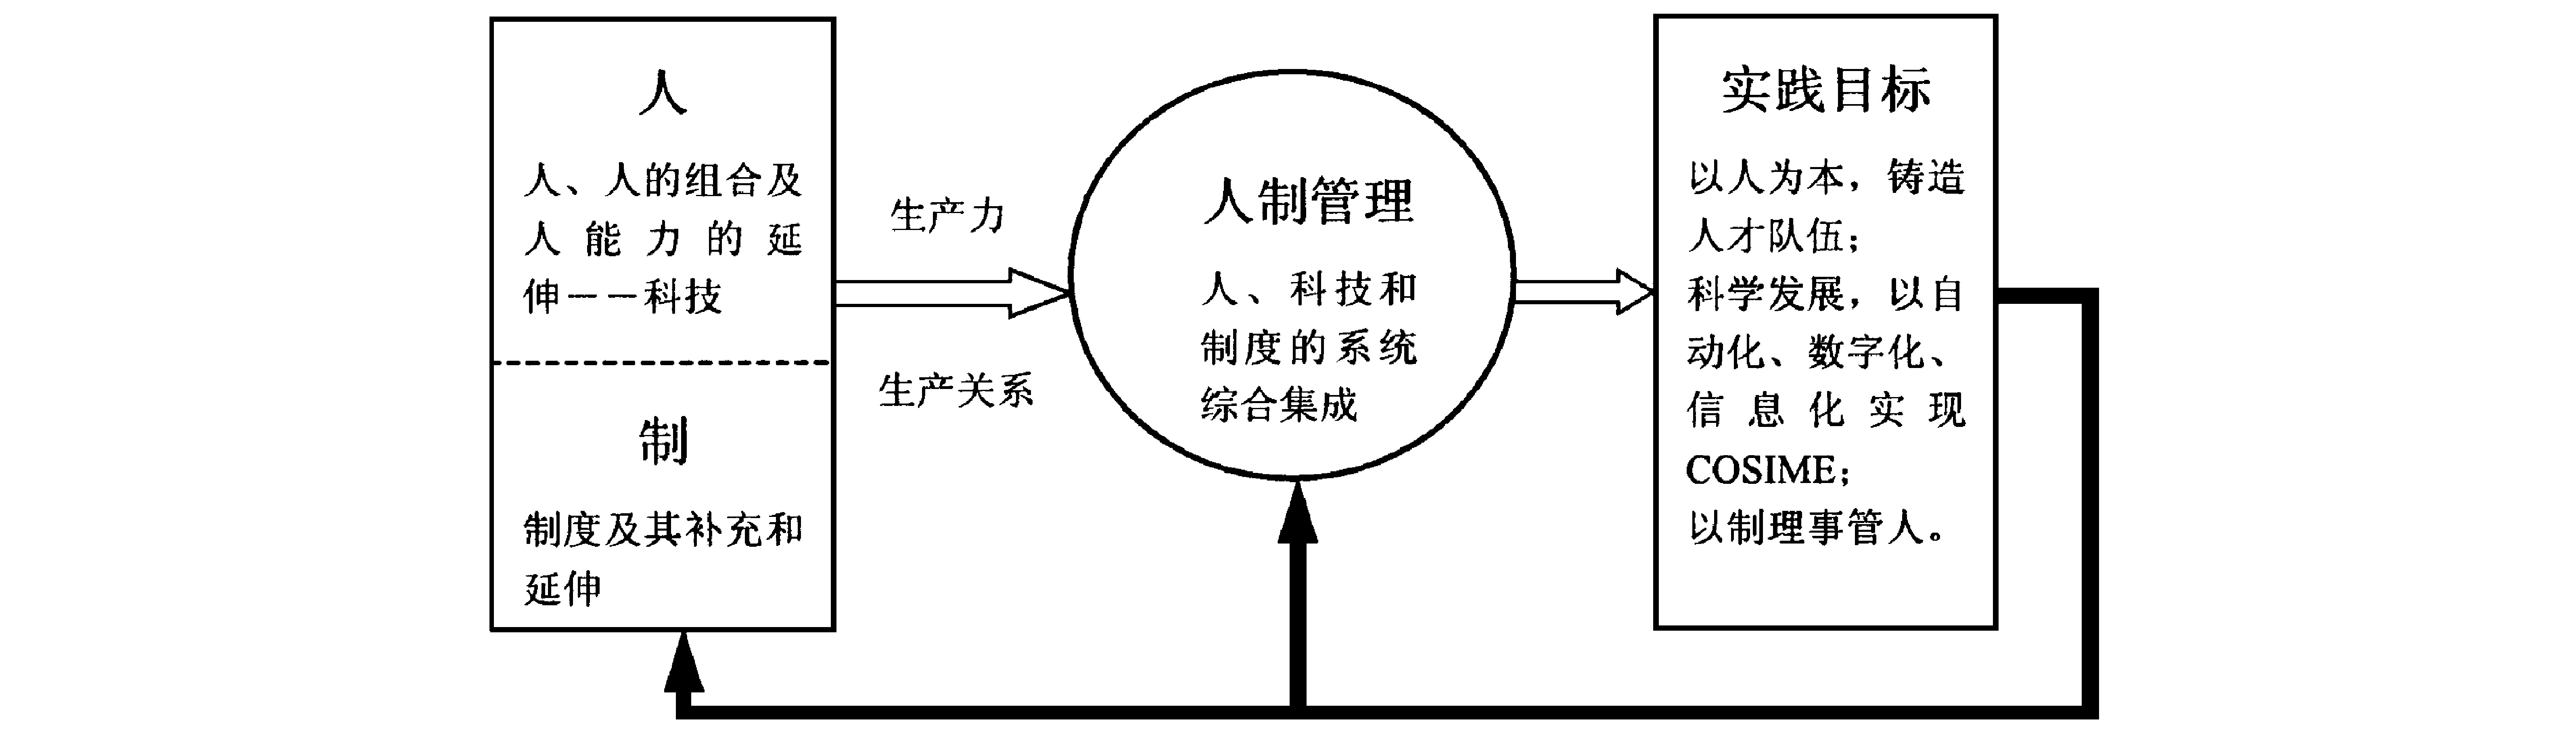 图2人制管理理念基本框架体系